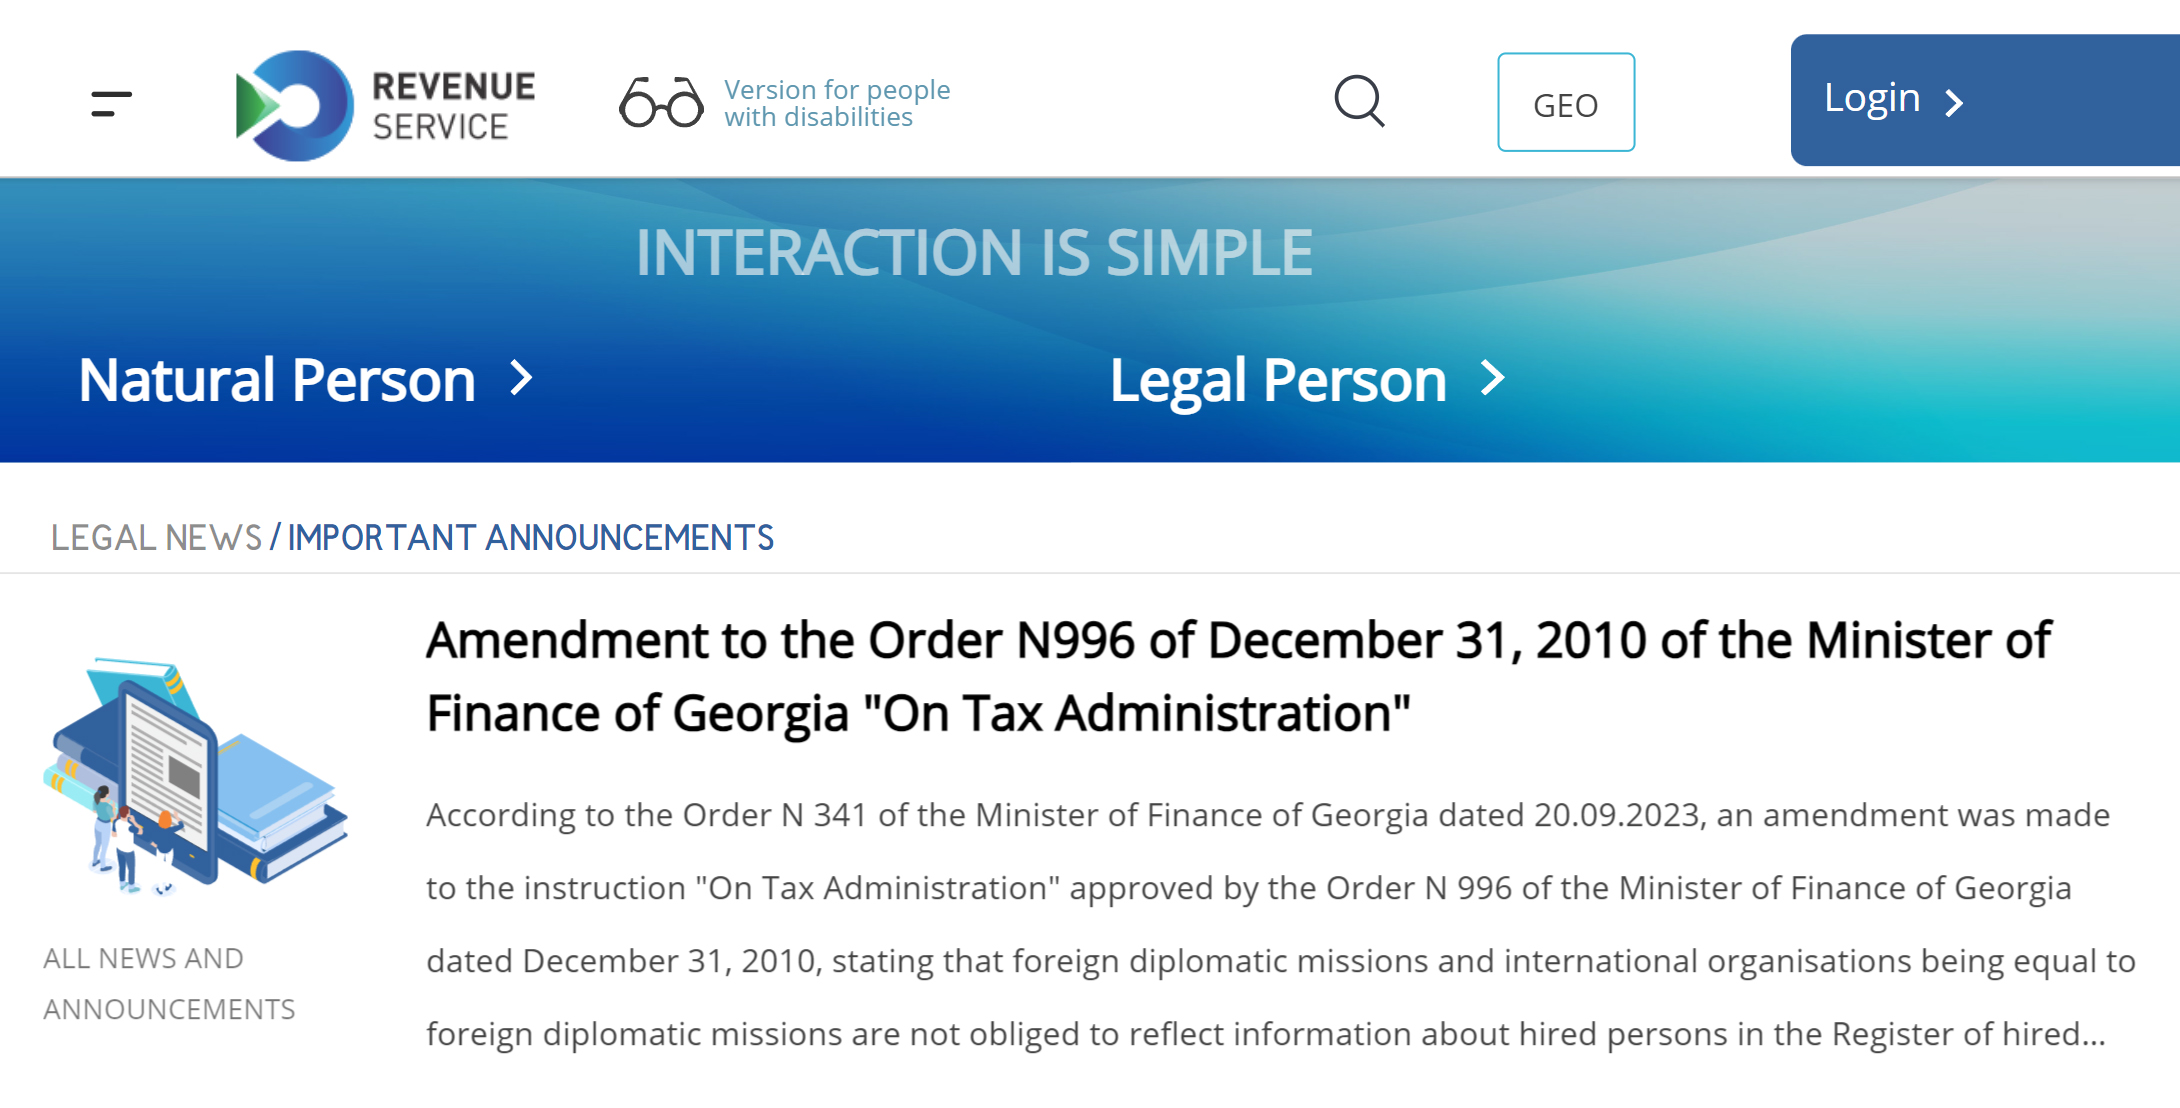 Зарегистрироваться на сайте налоговой можно самим онлайн, но сайт на грузинском языке и на английский переведен плохо, поэтому регистрацией занималось агентство